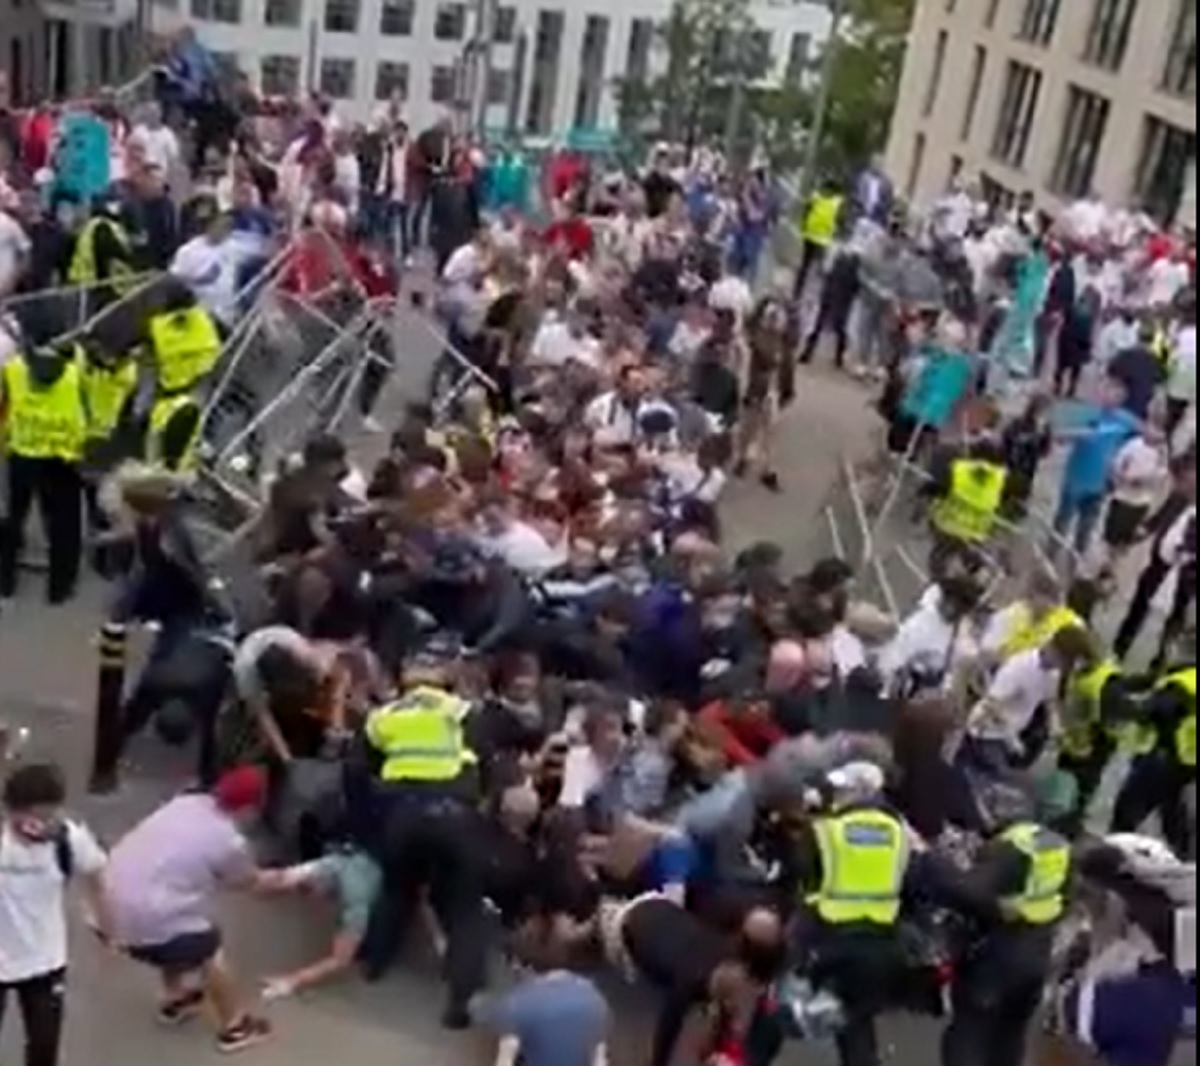 EURO 2020 | Anarhie pe străzile din Londra înainte de Italia – Anglia! Ultraşii au invadat arena Wembley şi s-au luat la bătaie cu stewarzii. Comunicatul oficial!